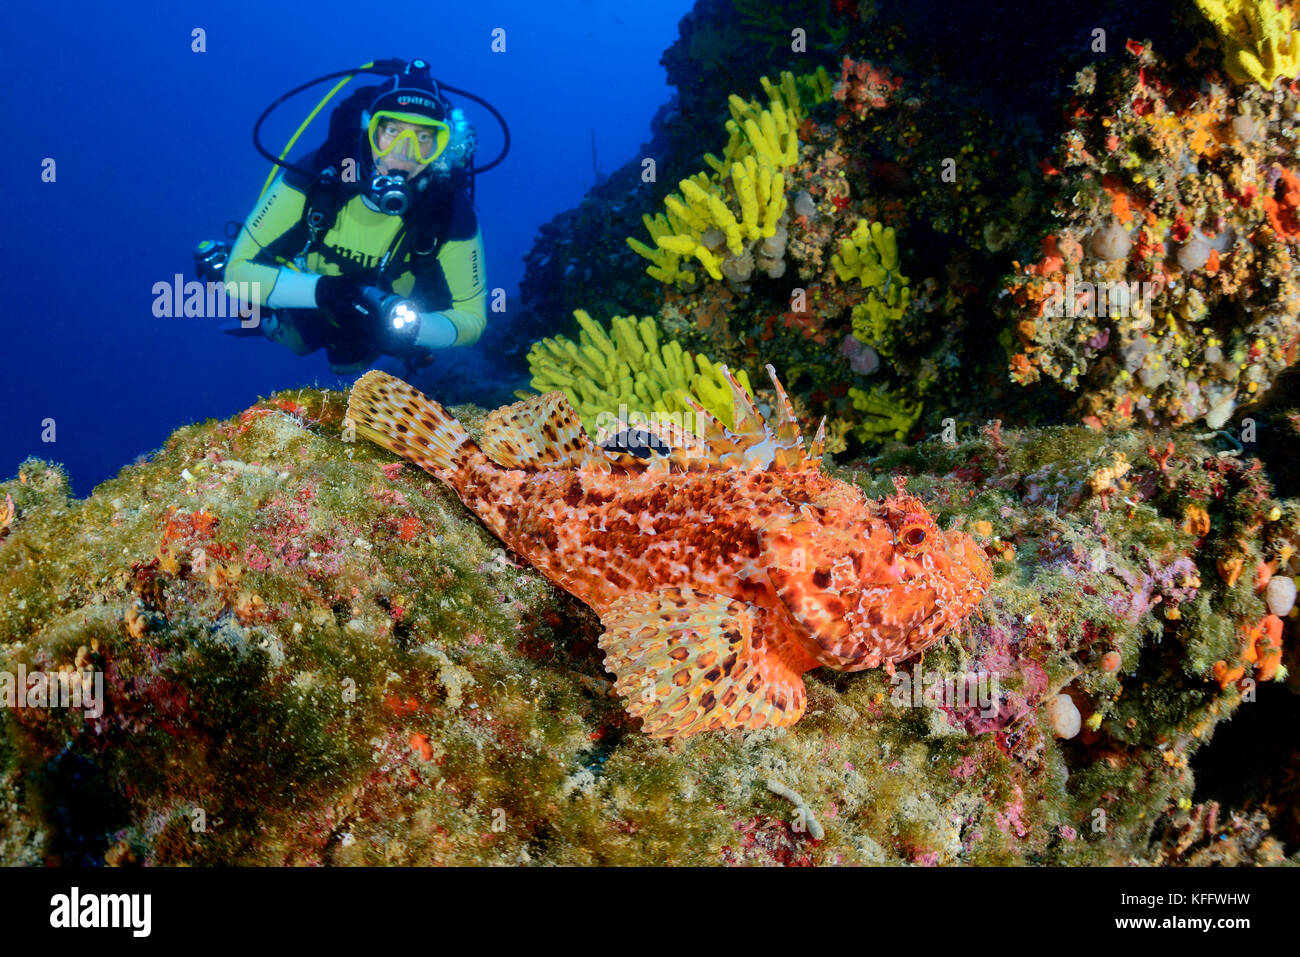 Red scorfani, scorpaena scrofa, Coral reef e scuba diver, mare adriatico, mare mediterraneo, DALMAZIA, CROAZIA Foto Stock